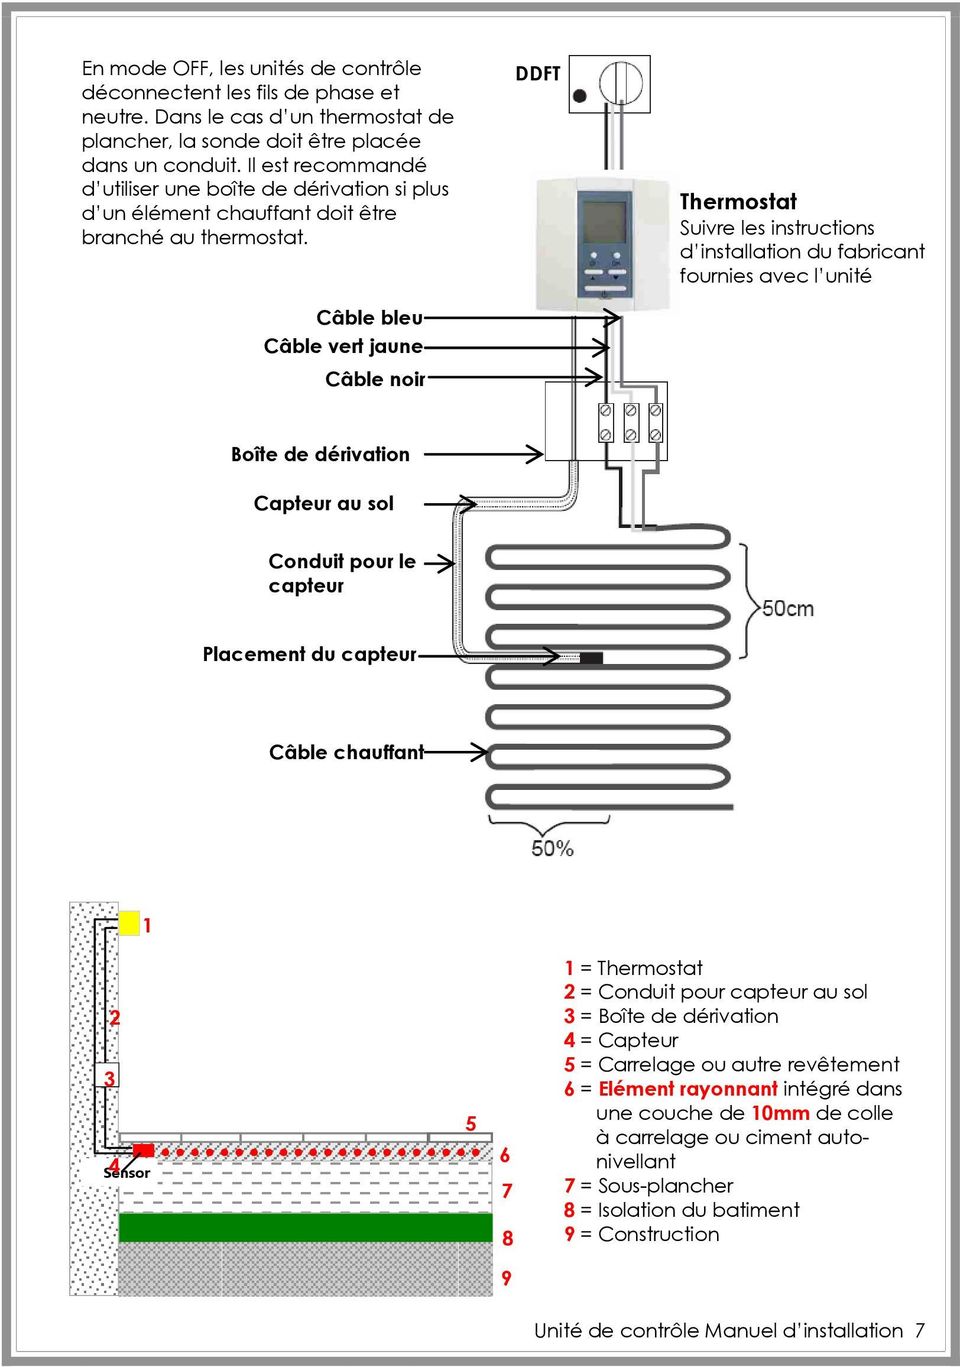 Câble bleu Câble vert jaune Câble noir DDFT Thermostat Suivre les instructions d installation du fabricant fournies avec l unité Boîte de dérivation Capteur au sol Conduit pour le capteur Placement